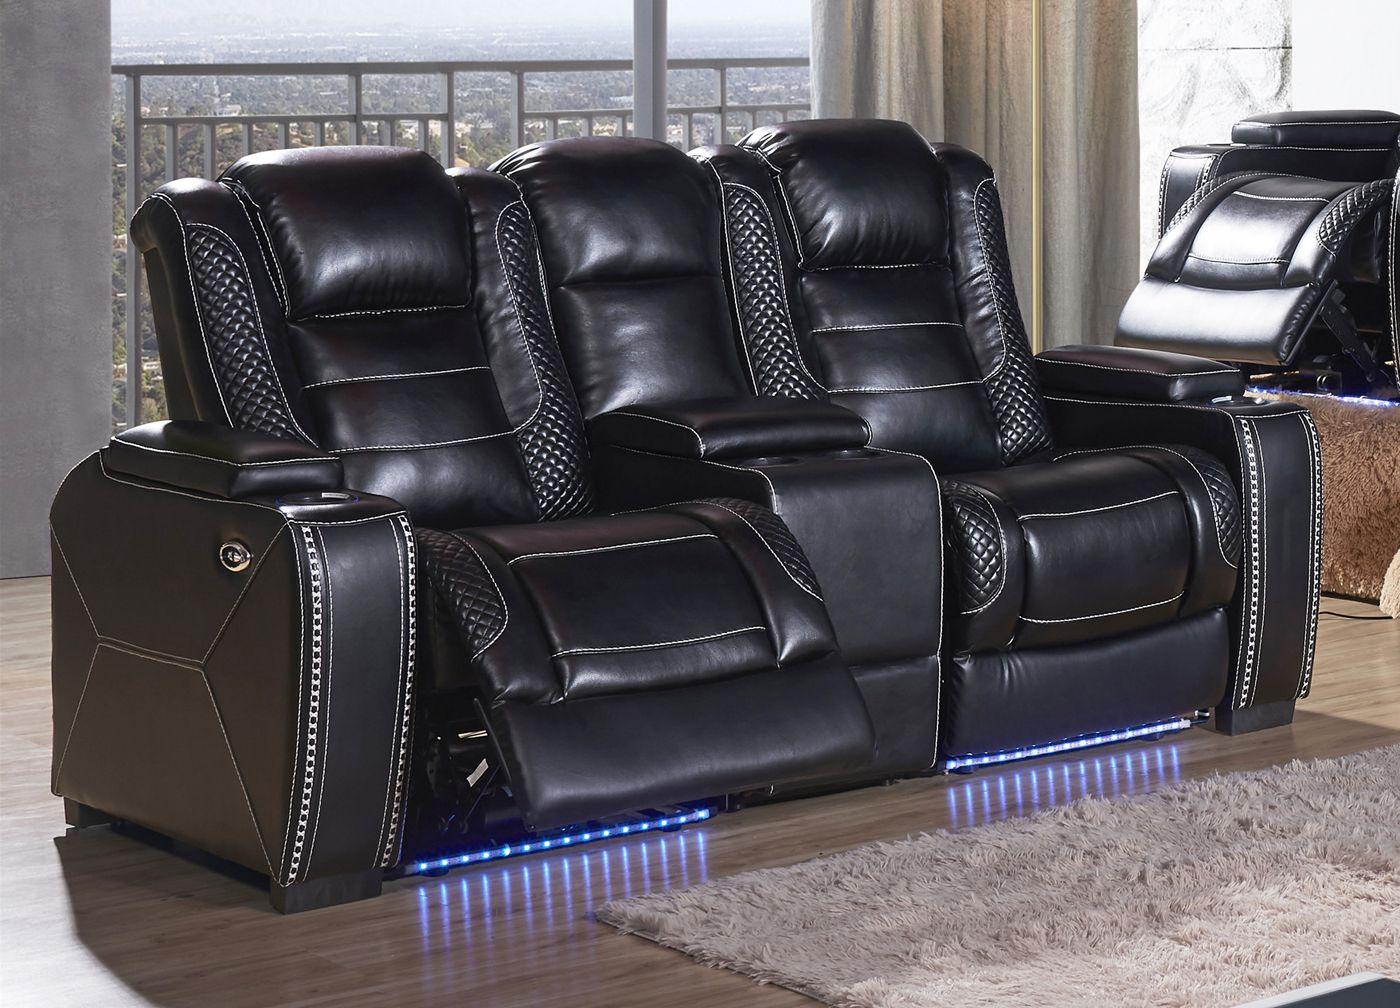 

    
McFerran Furniture SF3816 Recliner Sofa Set Black SF3816-3PC
